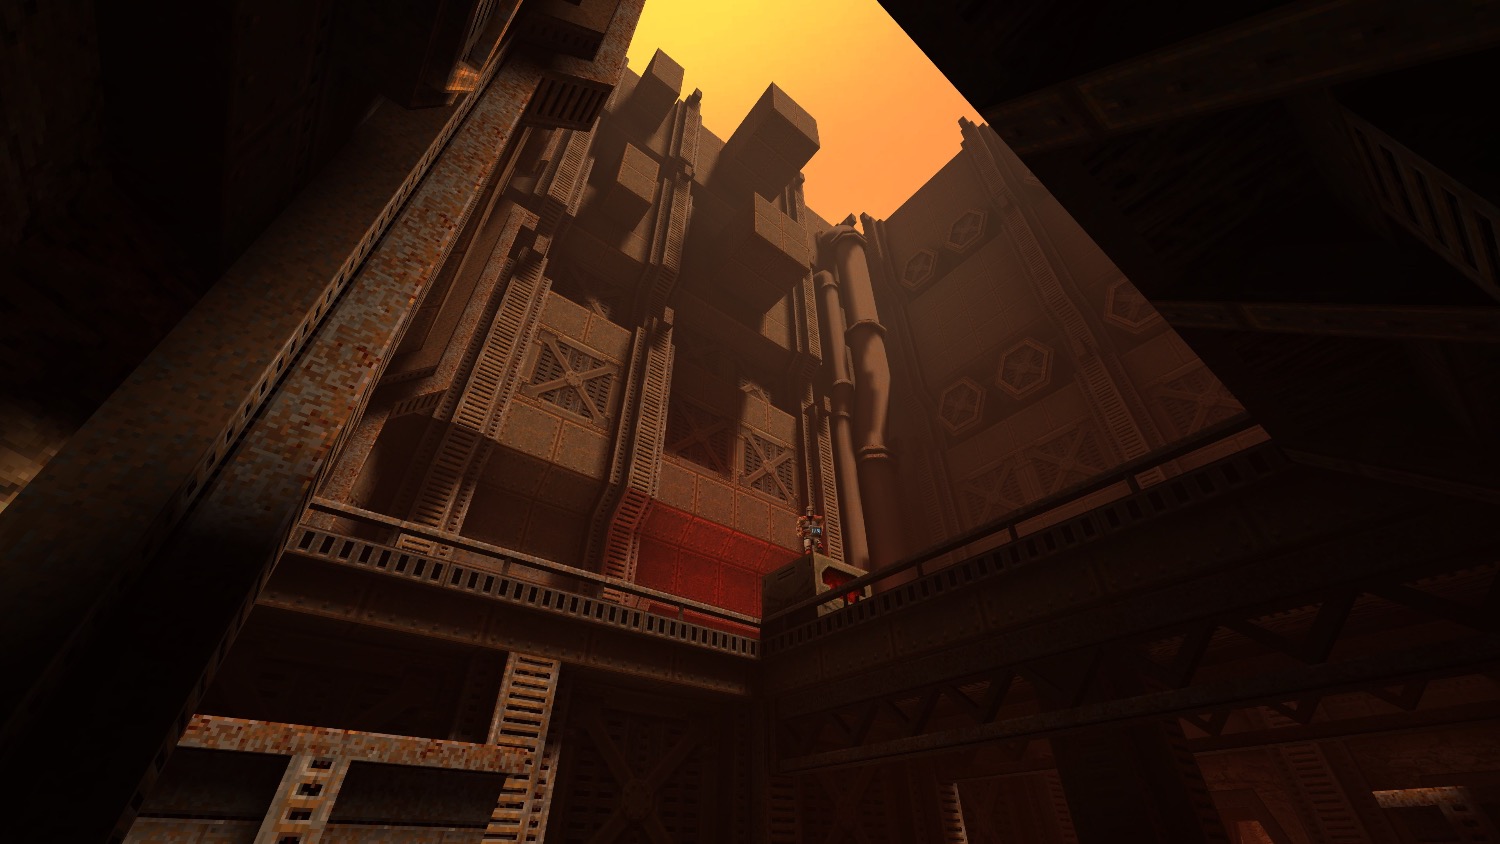 Скриншоты Quake II (2) [PS4, русская версия] интернет-магазин Омегагейм